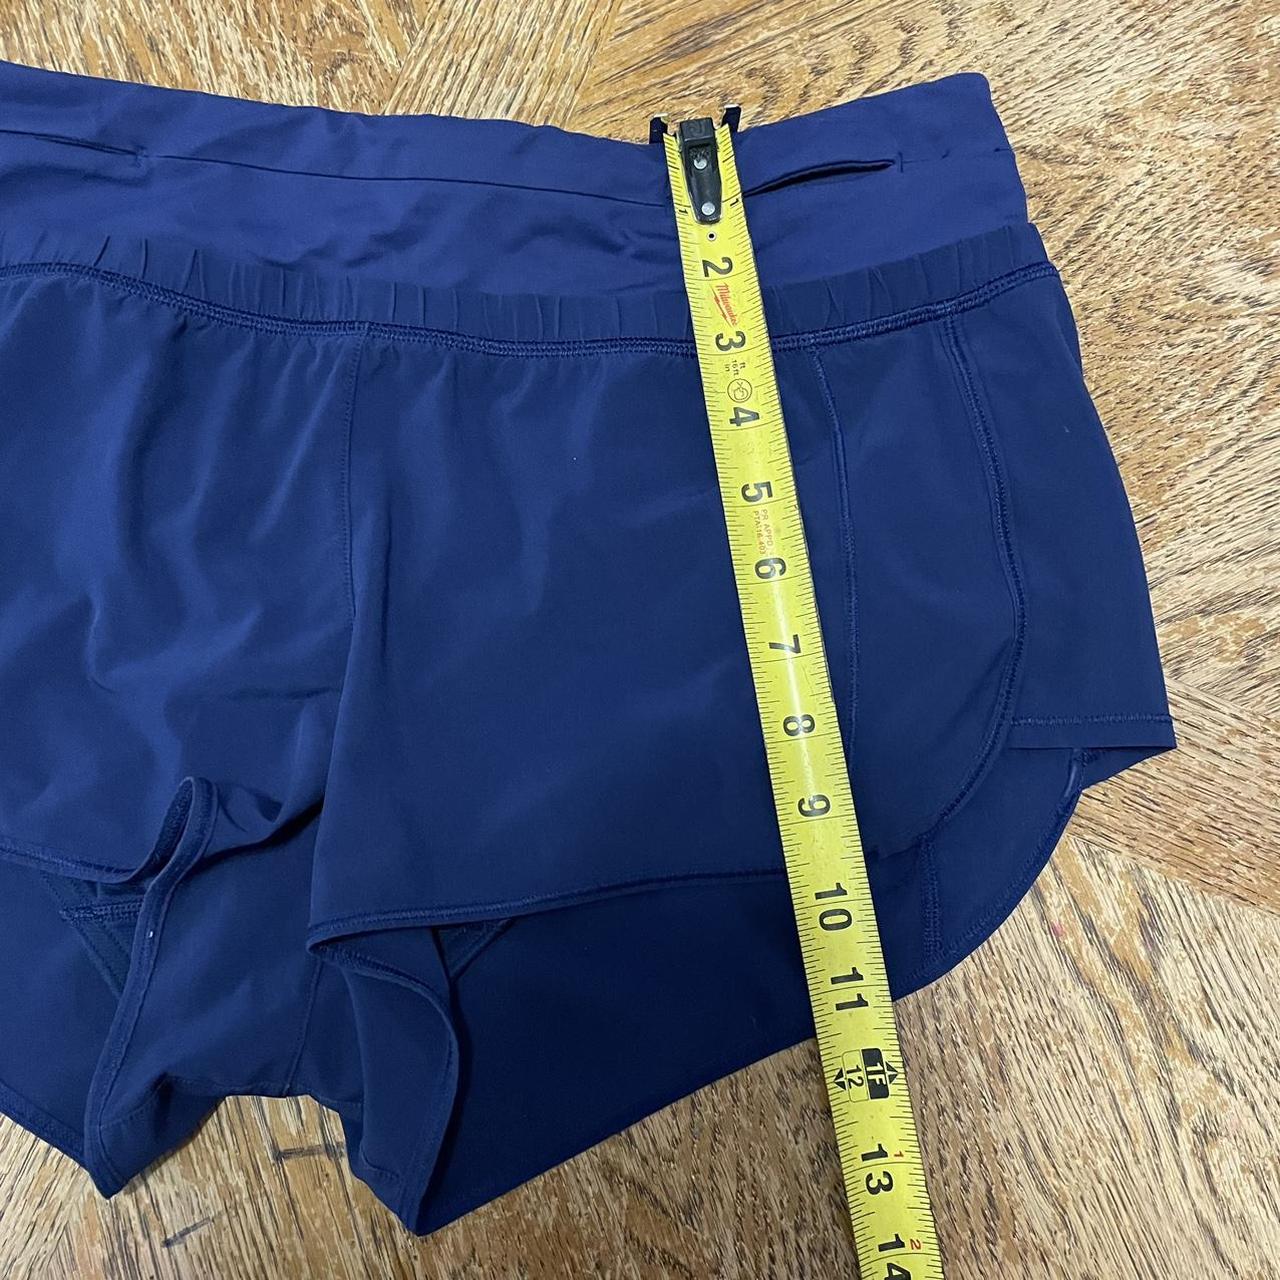 Navy blue Lululemon Shorts - Size 4 / Women's size 8 - Shorts - Sydney,  Australia, Facebook Marketplace